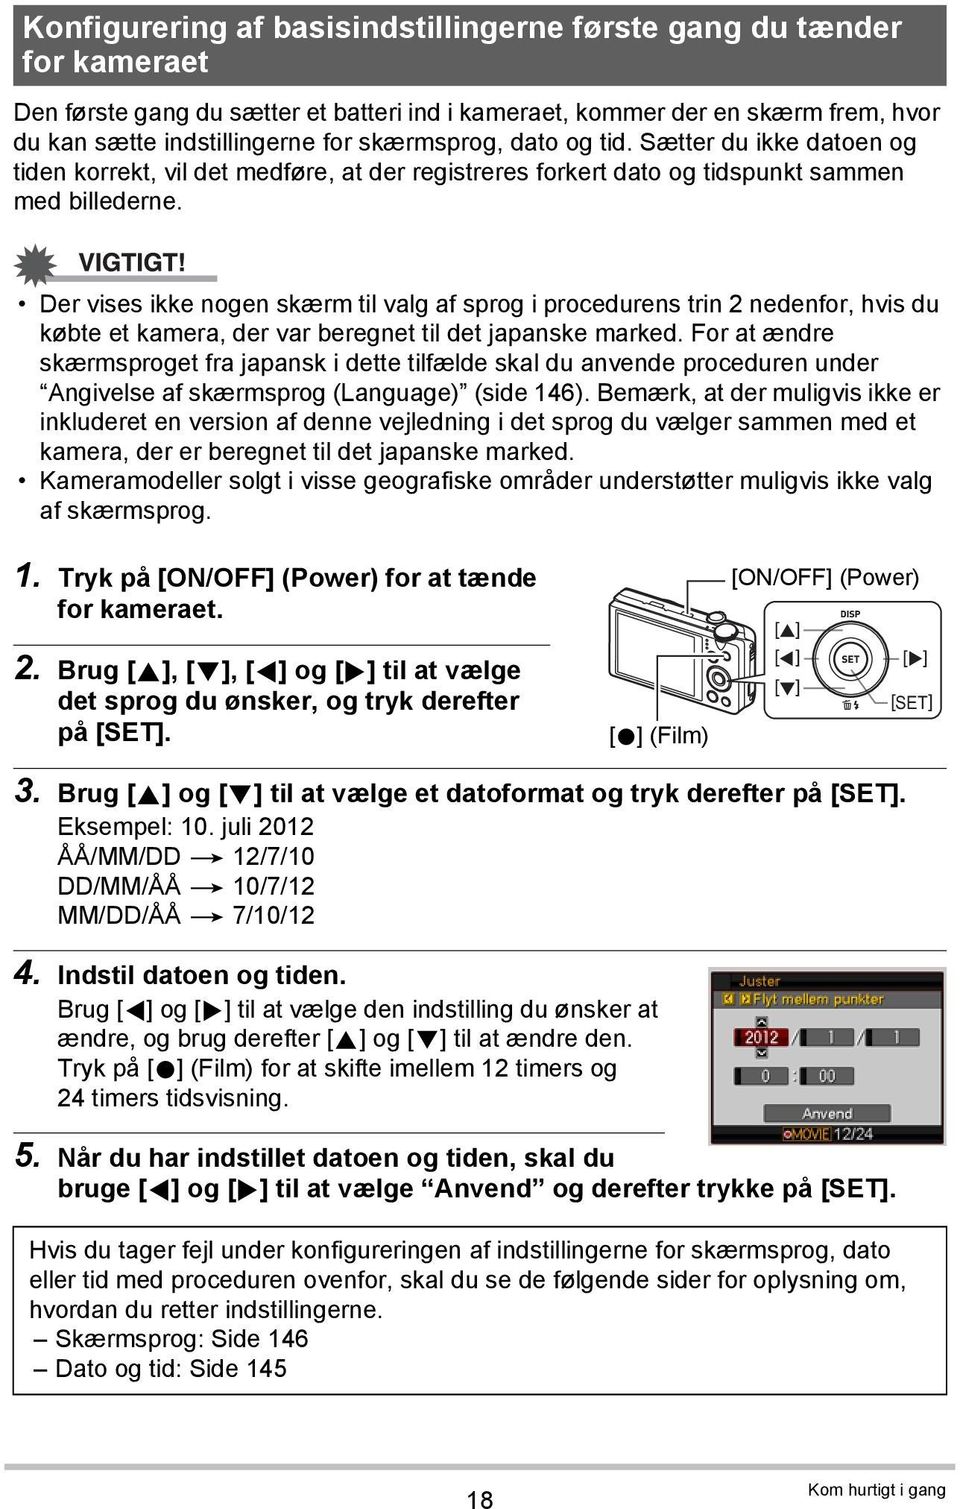 Der vises ikke nogen skærm til valg af sprog i procedurens trin 2 nedenfor, hvis du købte et kamera, der var beregnet til det japanske marked.